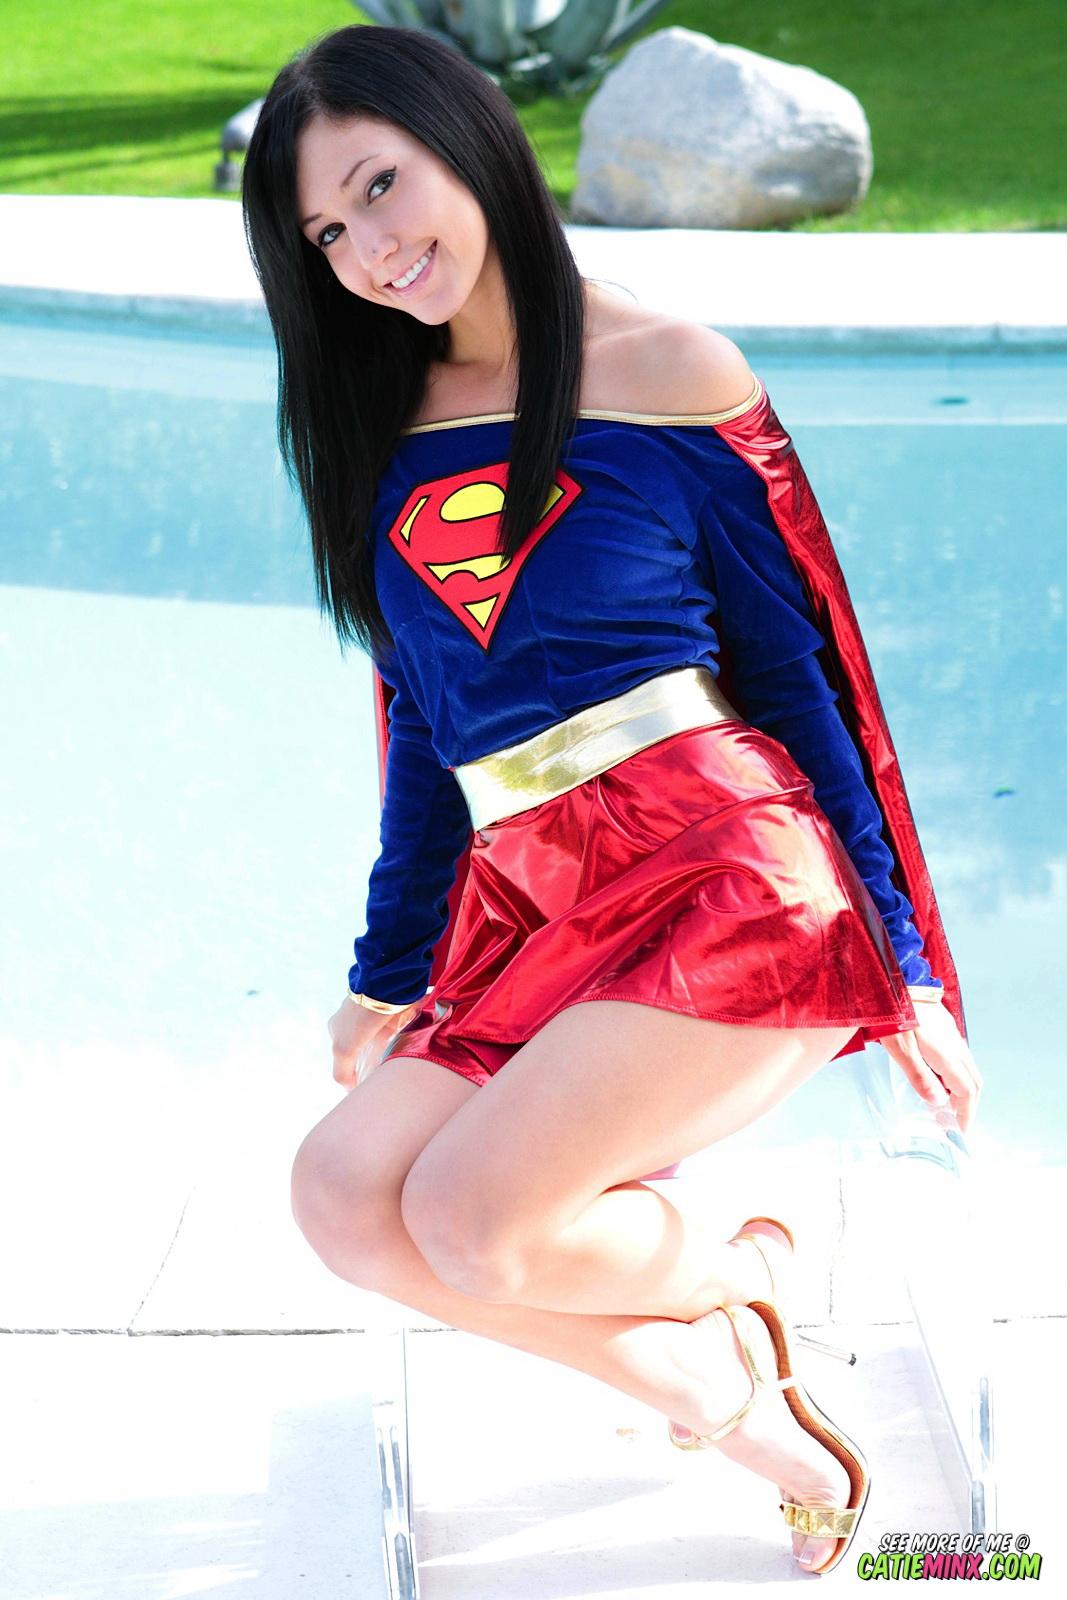 Mild mannered nerd Catie Minx reveals her super naughty powers as Supergirl #53722641